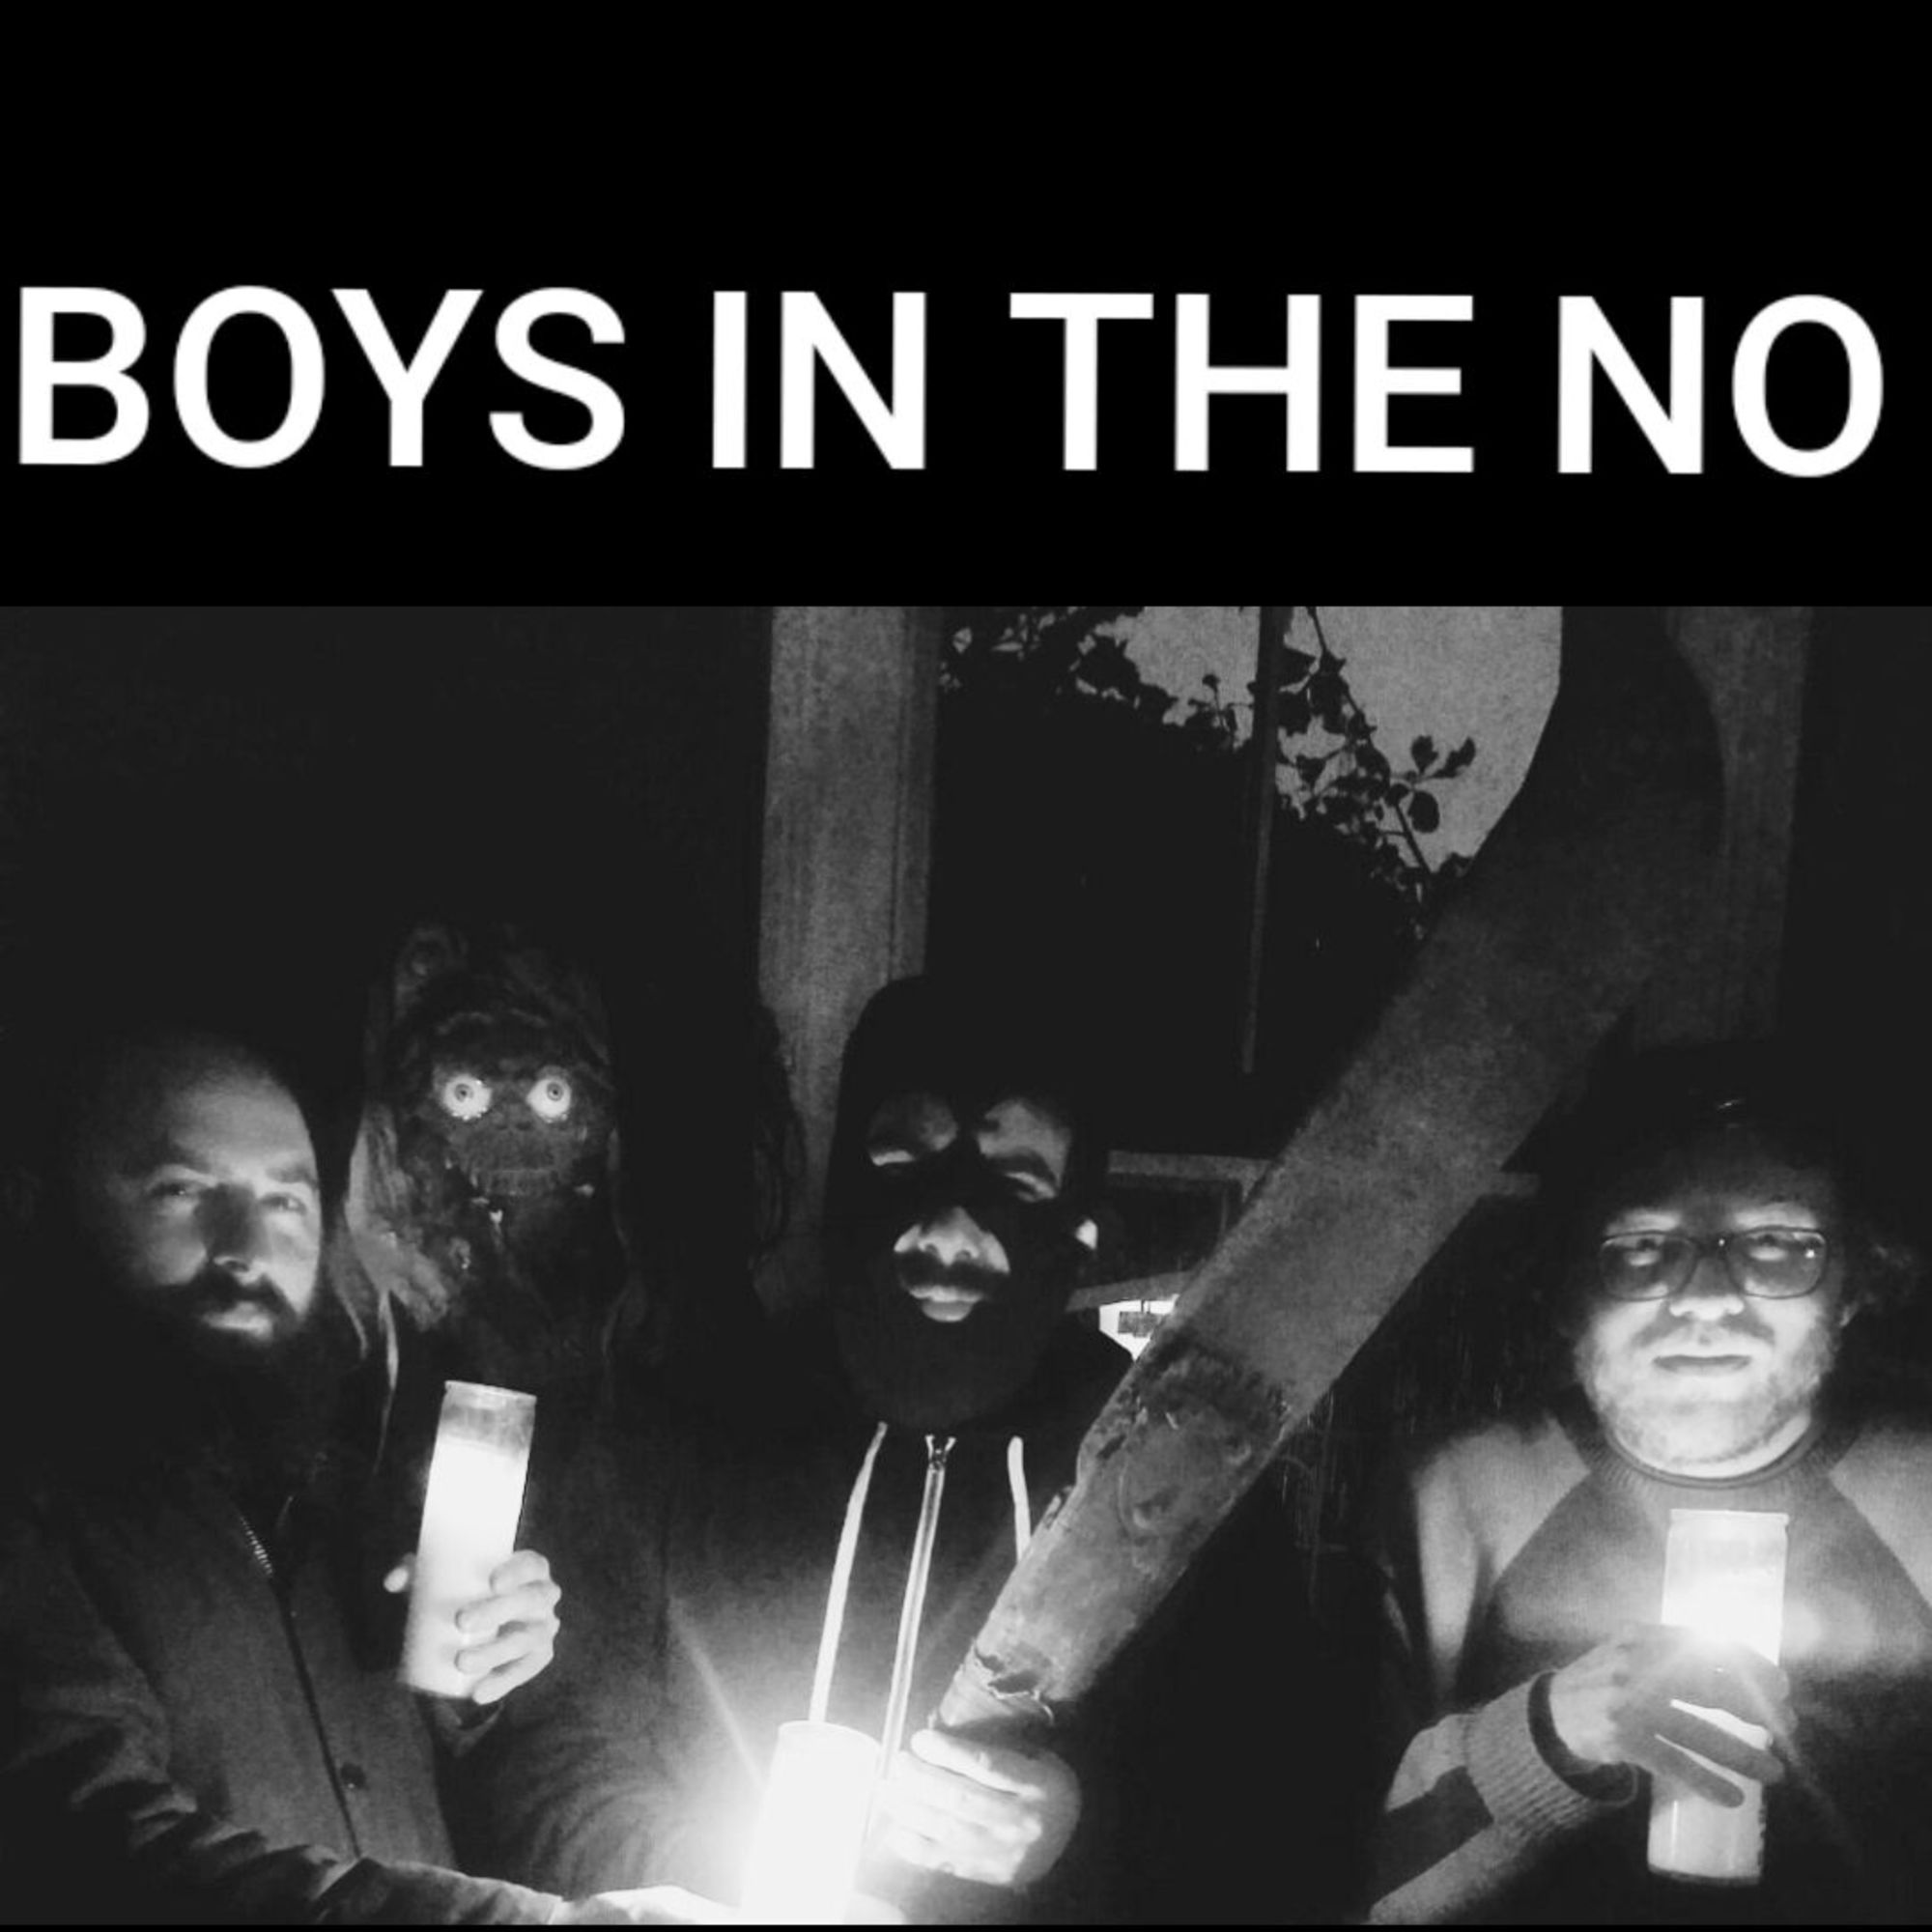 BOYS in the N.O.